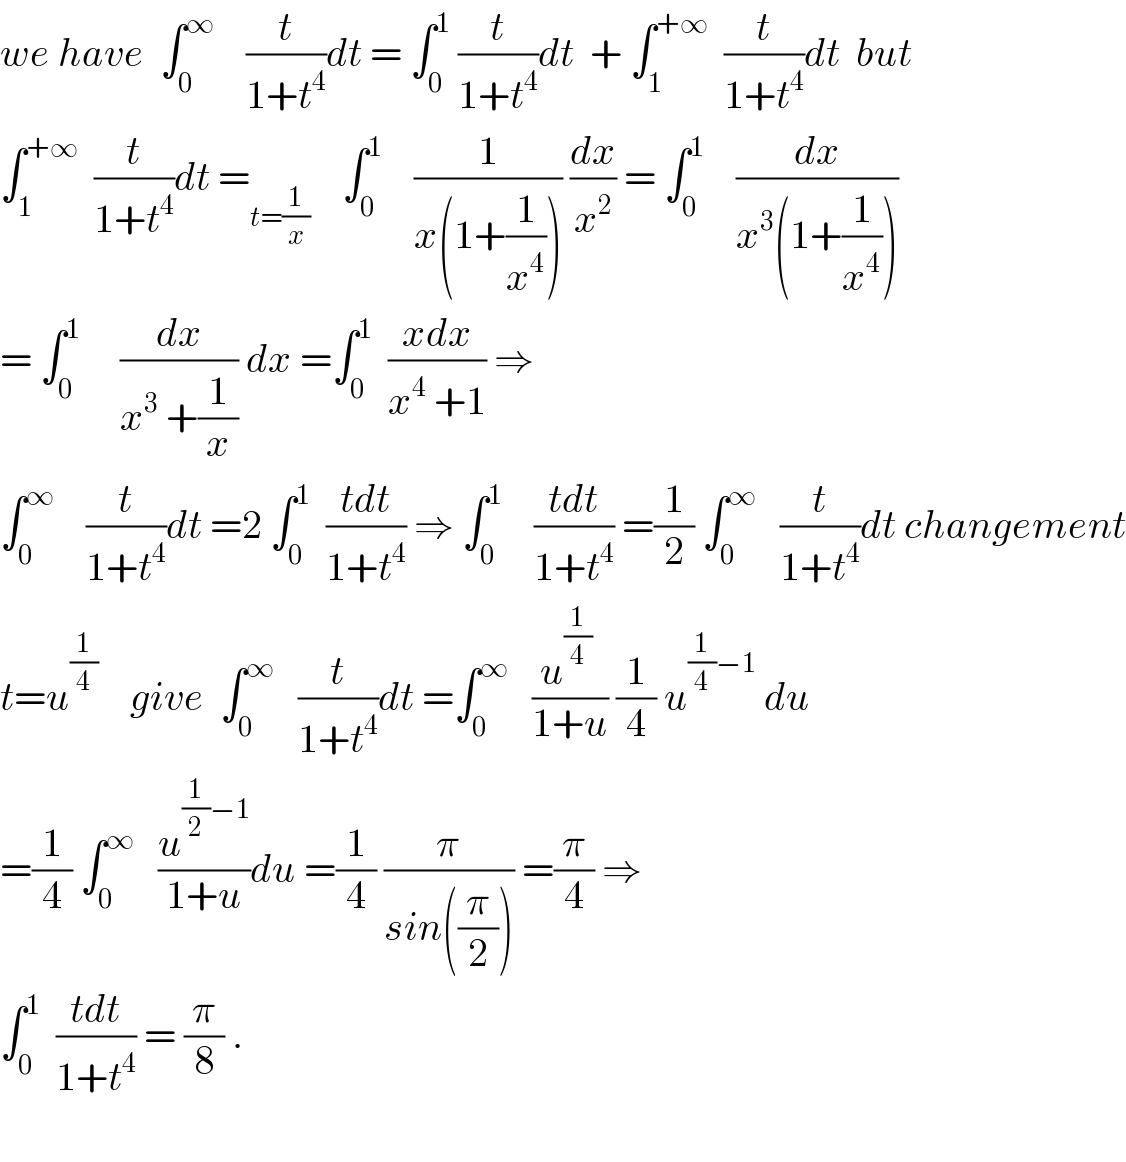 we have  ∫_0 ^∞     (t/(1+t^4 ))dt = ∫_0 ^1  (t/(1+t^4 ))dt  + ∫_1 ^(+∞)   (t/(1+t^4 ))dt  but  ∫_1 ^(+∞)   (t/(1+t^4 ))dt =_(t=(1/x))     ∫_0 ^1     (1/(x(1+(1/x^4 )))) (dx/x^2 ) = ∫_0 ^1     (dx/(x^3 (1+(1/x^4 ))))  = ∫_0 ^1      (dx/(x^3  +(1/x))) dx =∫_0 ^1   ((xdx)/(x^4  +1)) ⇒  ∫_0 ^∞     (t/(1+t^4 ))dt =2 ∫_0 ^1   ((tdt)/(1+t^4 )) ⇒ ∫_0 ^1     ((tdt)/(1+t^4 )) =(1/2) ∫_0 ^∞    (t/(1+t^4 ))dt changement  t=u^(1/4)     give  ∫_0 ^∞    (t/(1+t^4 ))dt =∫_0 ^∞    ((u^(1/4)  )/(1+u)) (1/4) u^((1/4)−1)  du  =(1/4) ∫_0 ^∞    (u^((1/2)−1) /(1+u))du =(1/4) (π/(sin((π/2)))) =(π/4) ⇒  ∫_0 ^1   ((tdt)/(1+t^4 )) = (π/8) .    